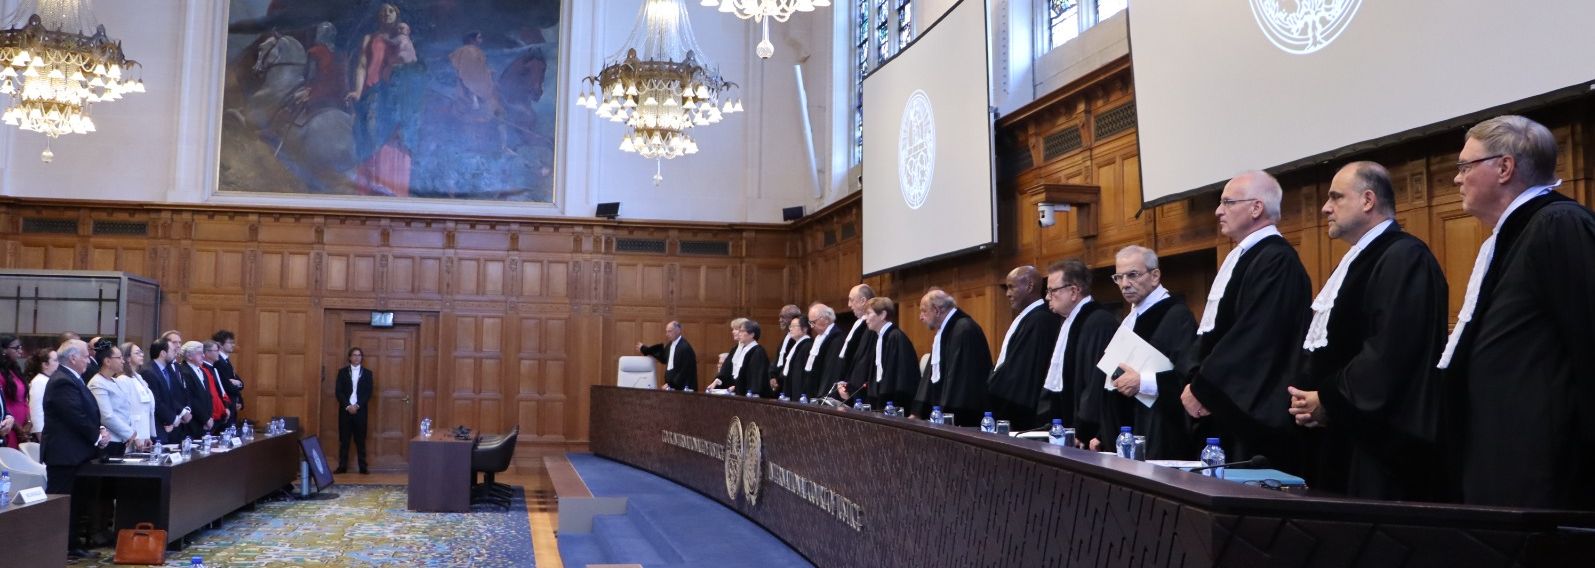 Triunfo agridulceLa Corte Internacional de Justicia (CIJ) que adioptó el fallo de las dos reclamaciones nicas. /CIJ